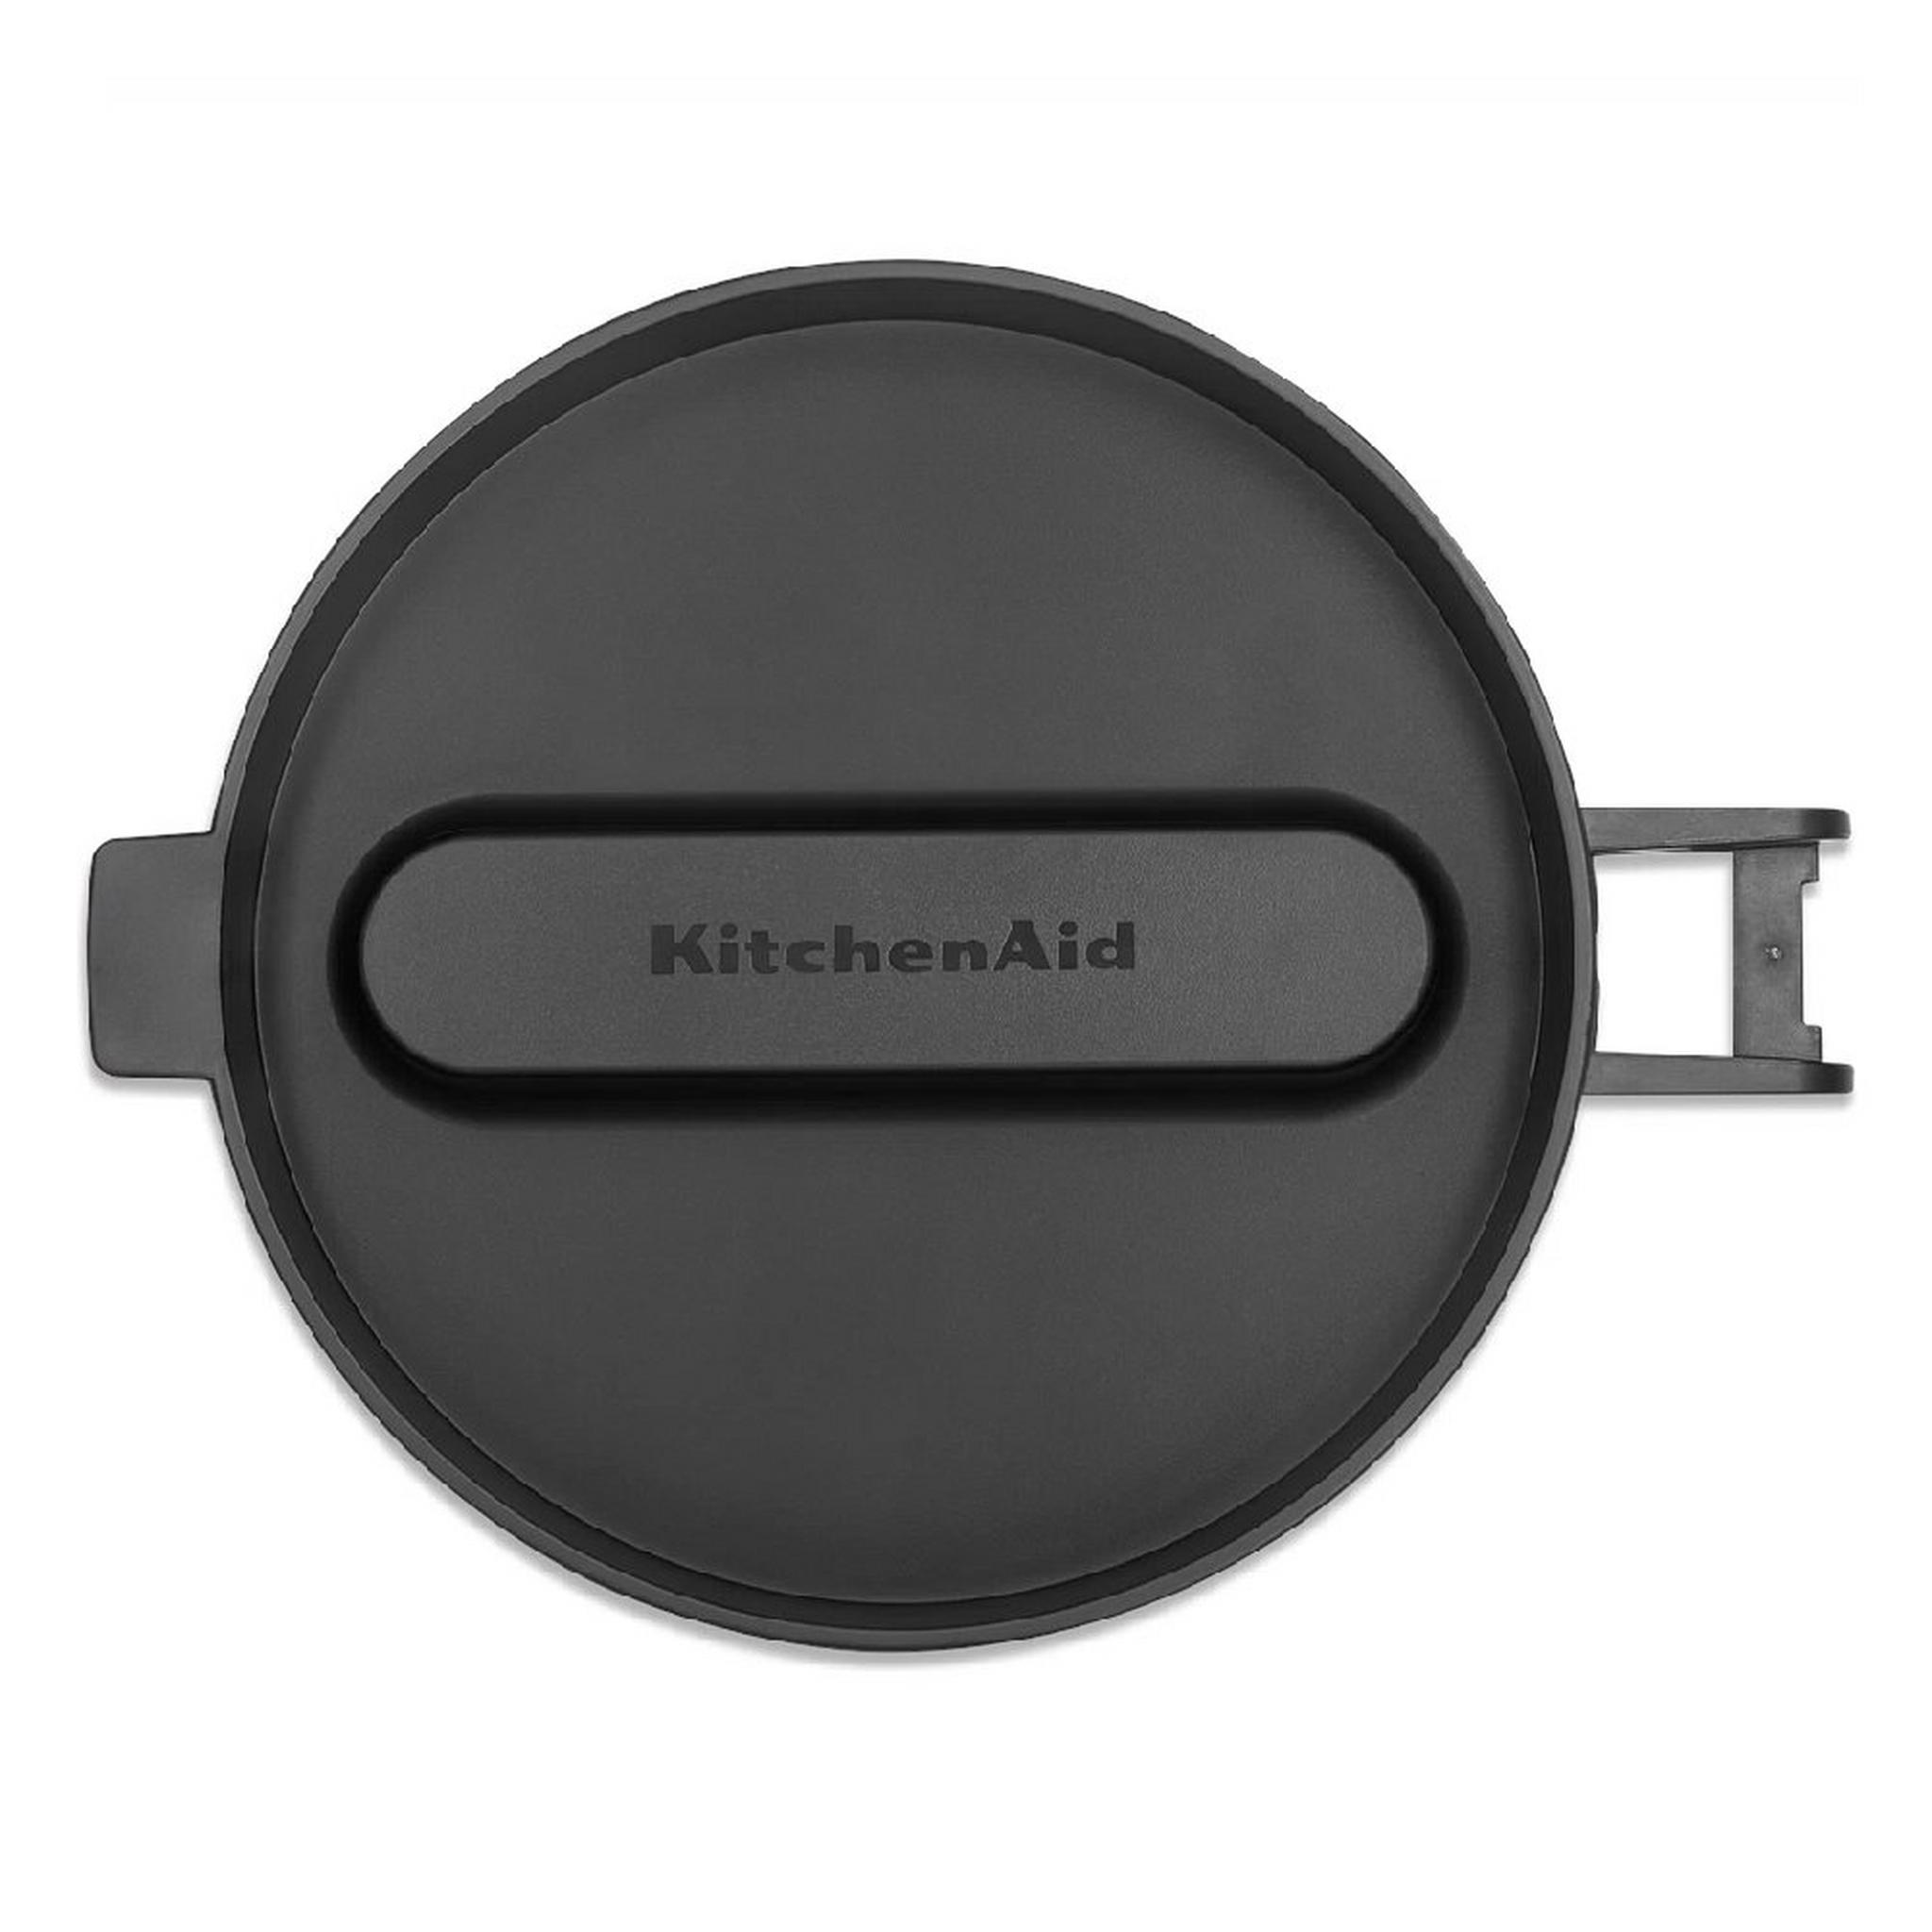 KitchenAid Food Processor, 2.1 L, 250W, 5KFP0921BOB - Black